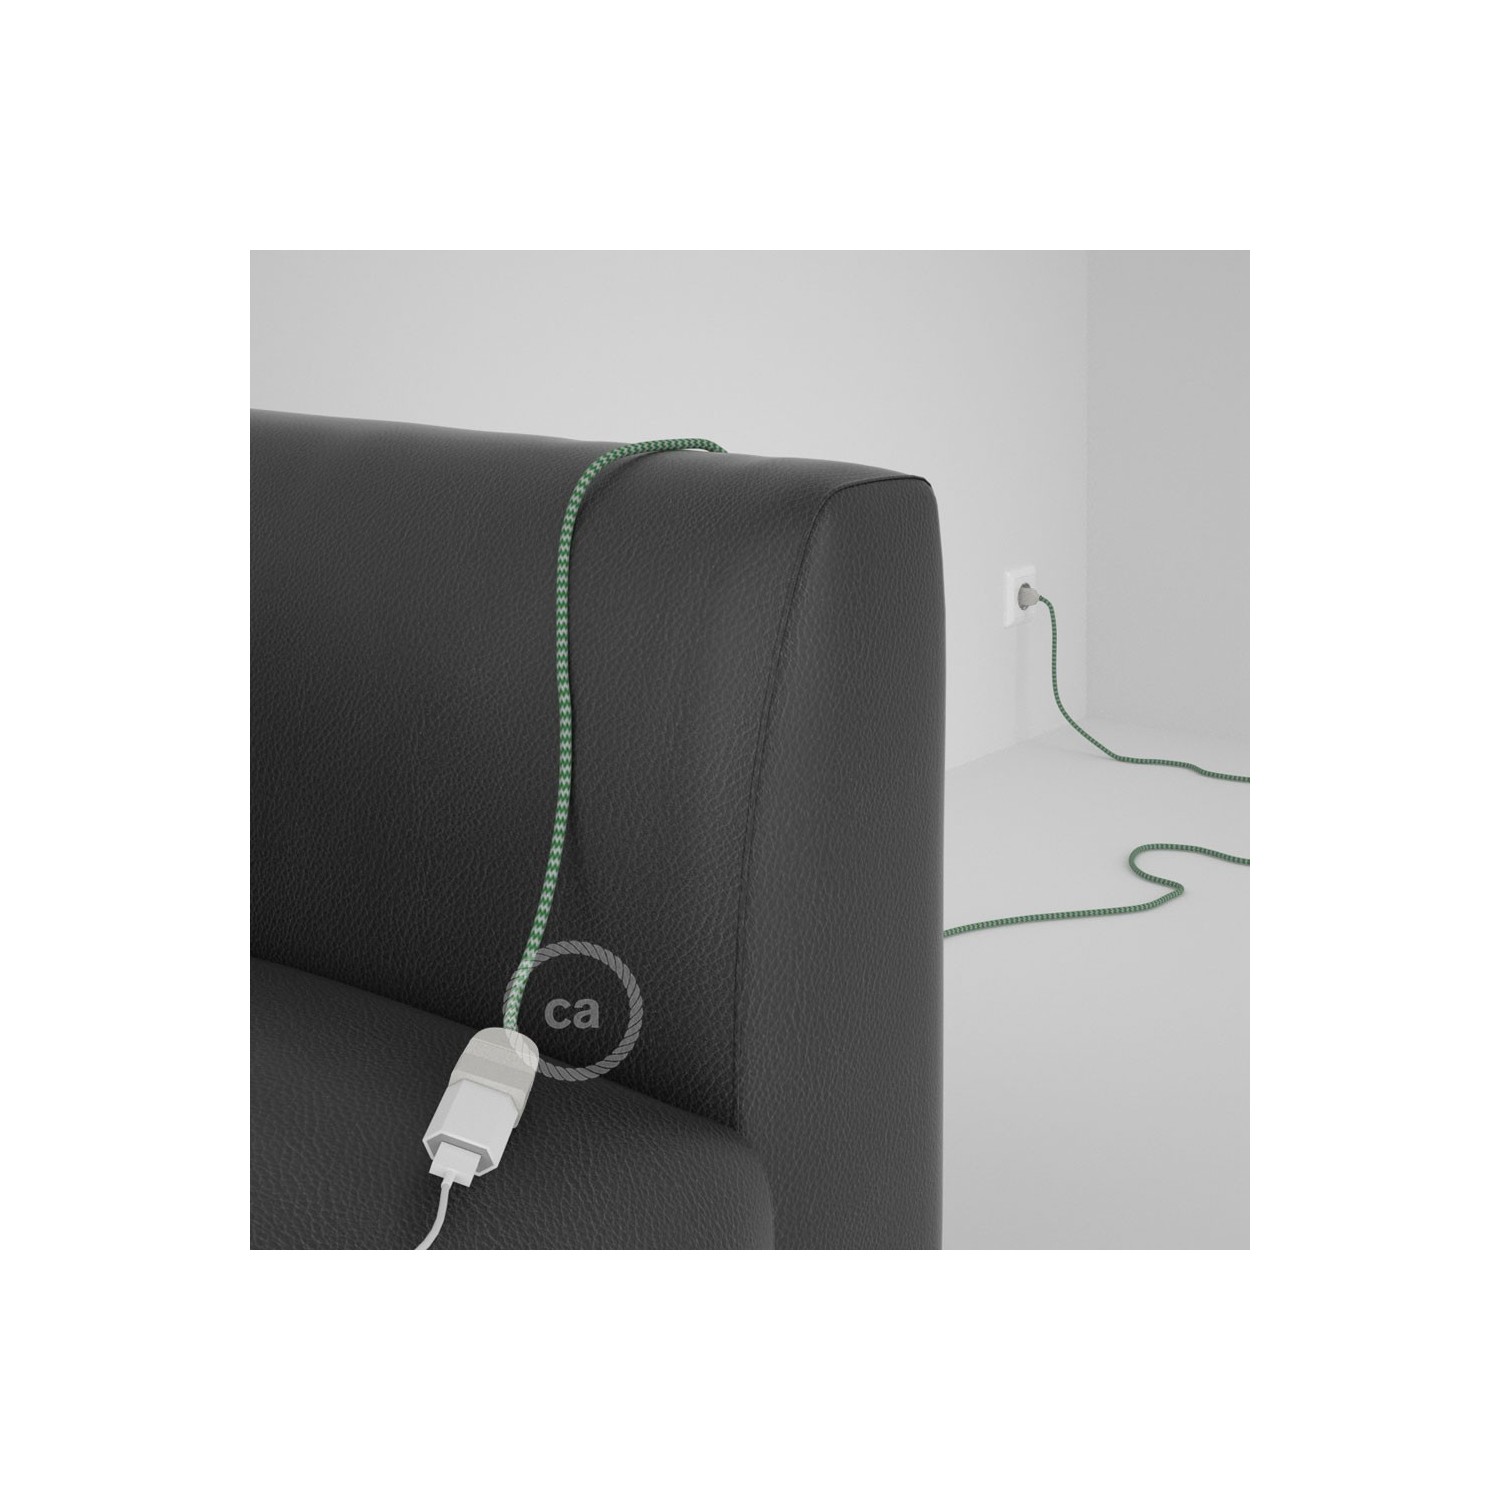 Rallonge électrique avec câble textile RZ06 Effet Soie ZigZag Blanc-Vert 2P 10A Made in Italy.